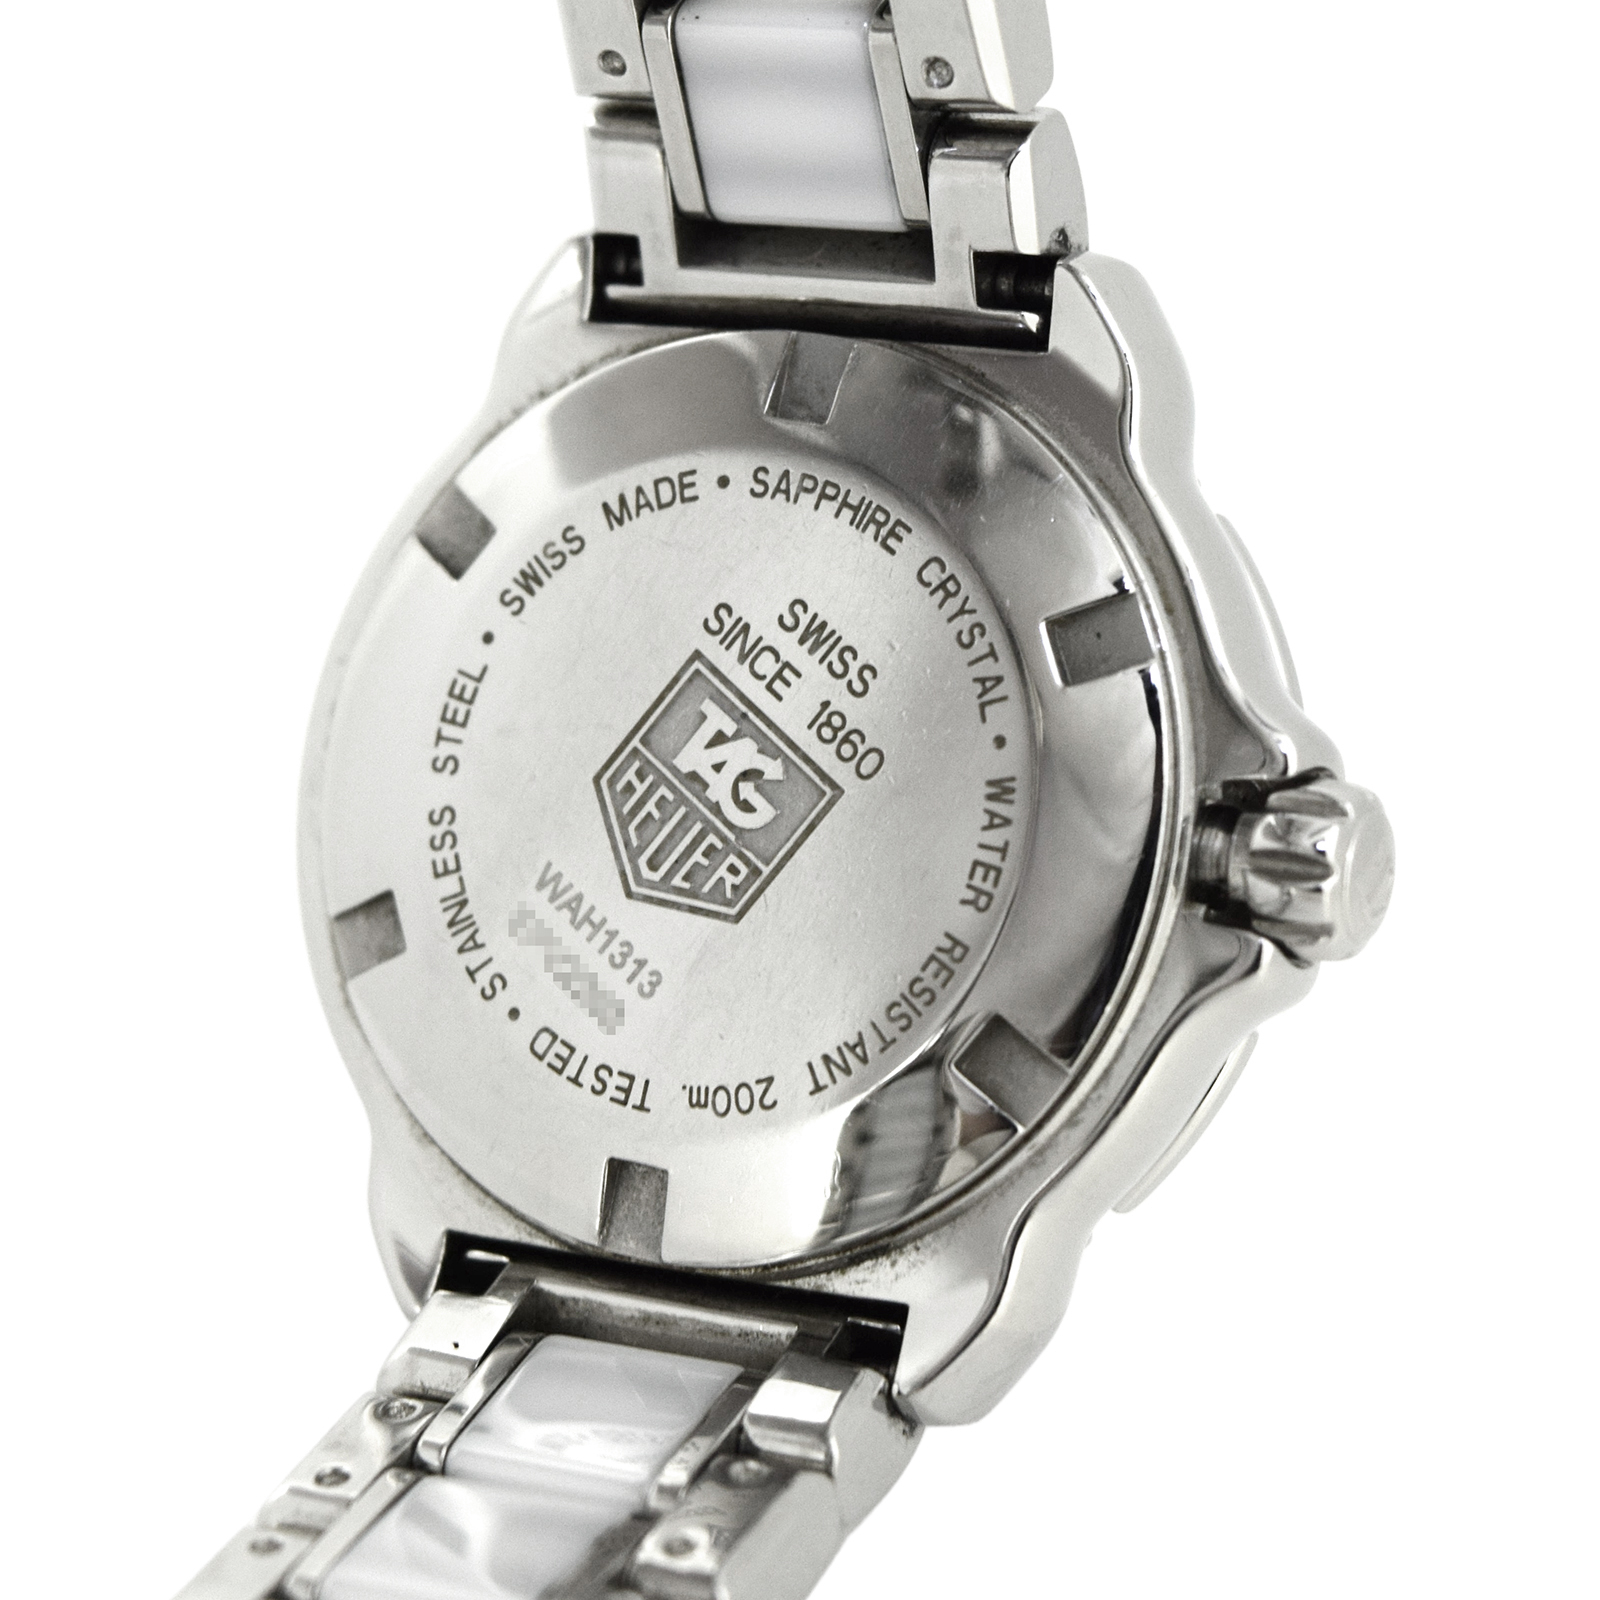 タグホイヤー フォーミュラ1 ダイヤベゼル 腕時計 ウォッチ 腕時計